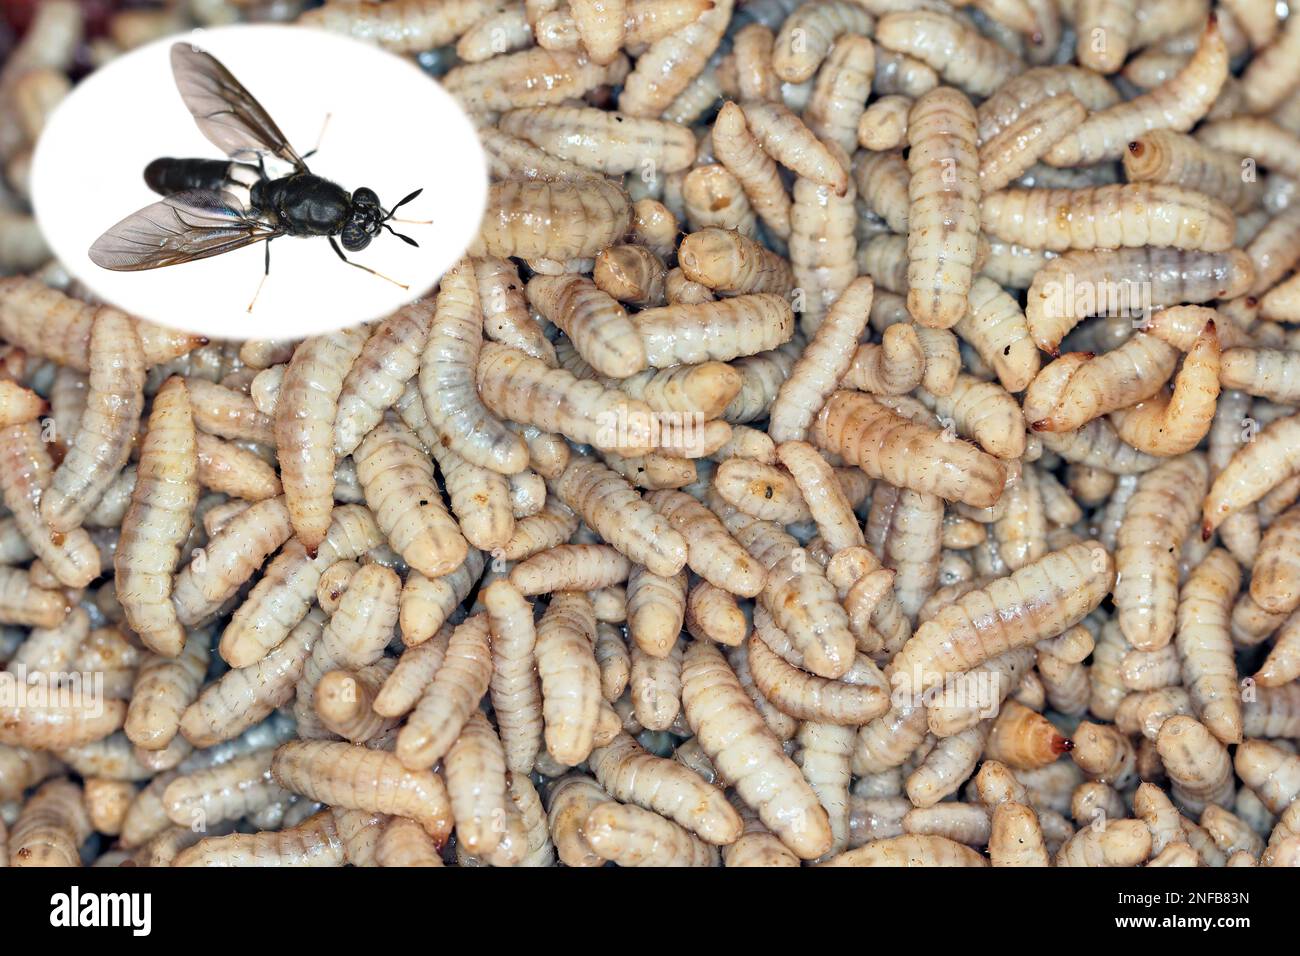 Hermetia luccens, il soldato nero volare. Larve e mosca per adulti. Insetti commestibili come prodotto alimentare riempito con proteine e nutrizione. Foto Stock